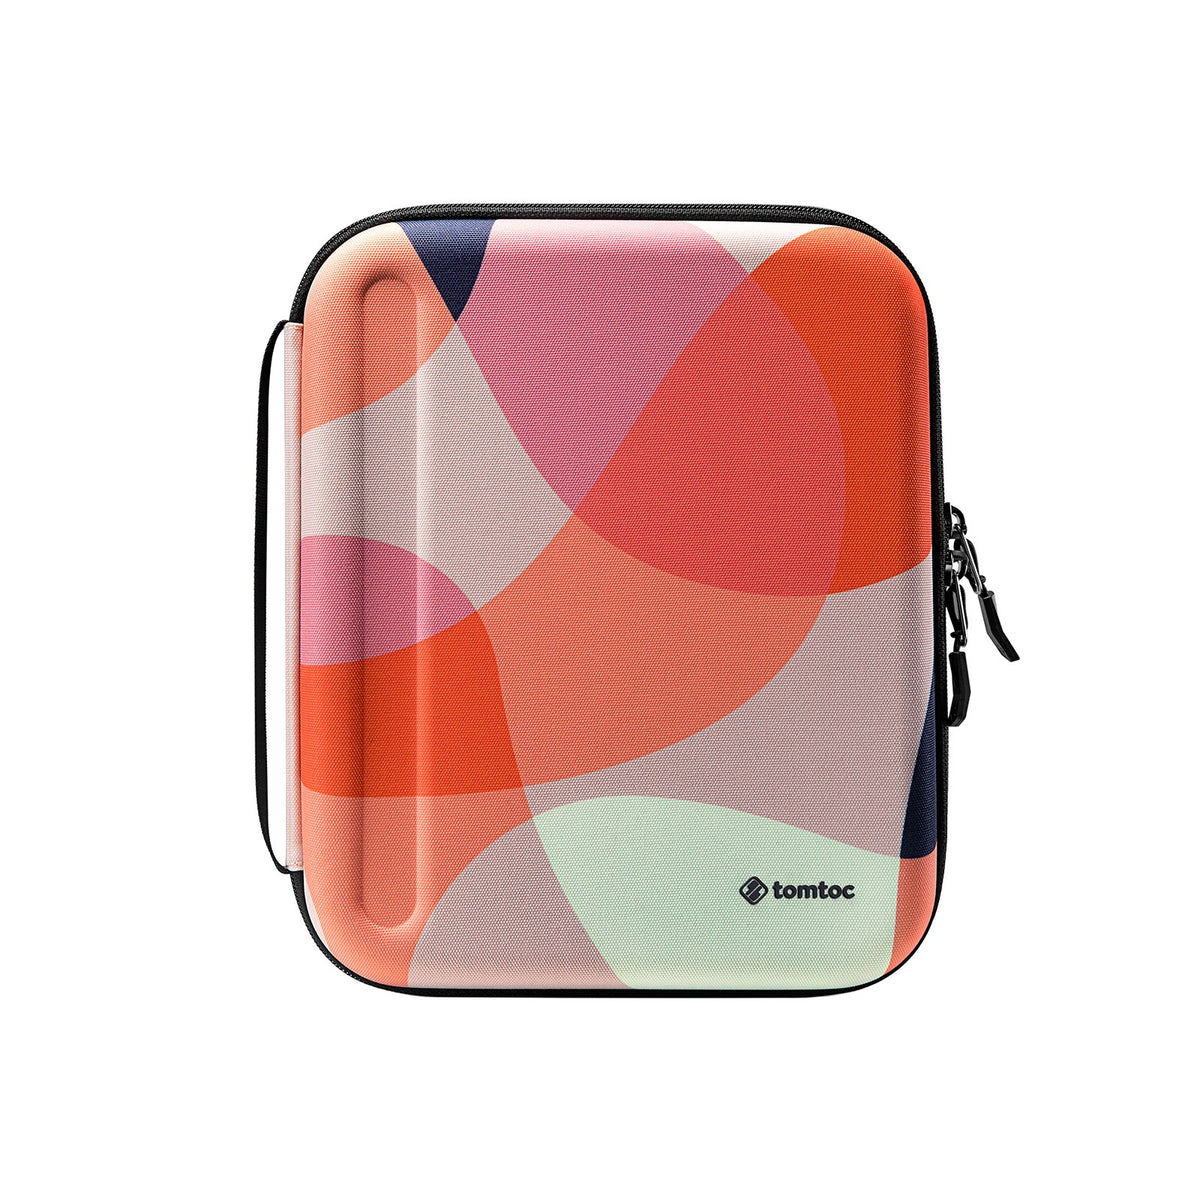 My iPad Pro travel bag : r/ipad